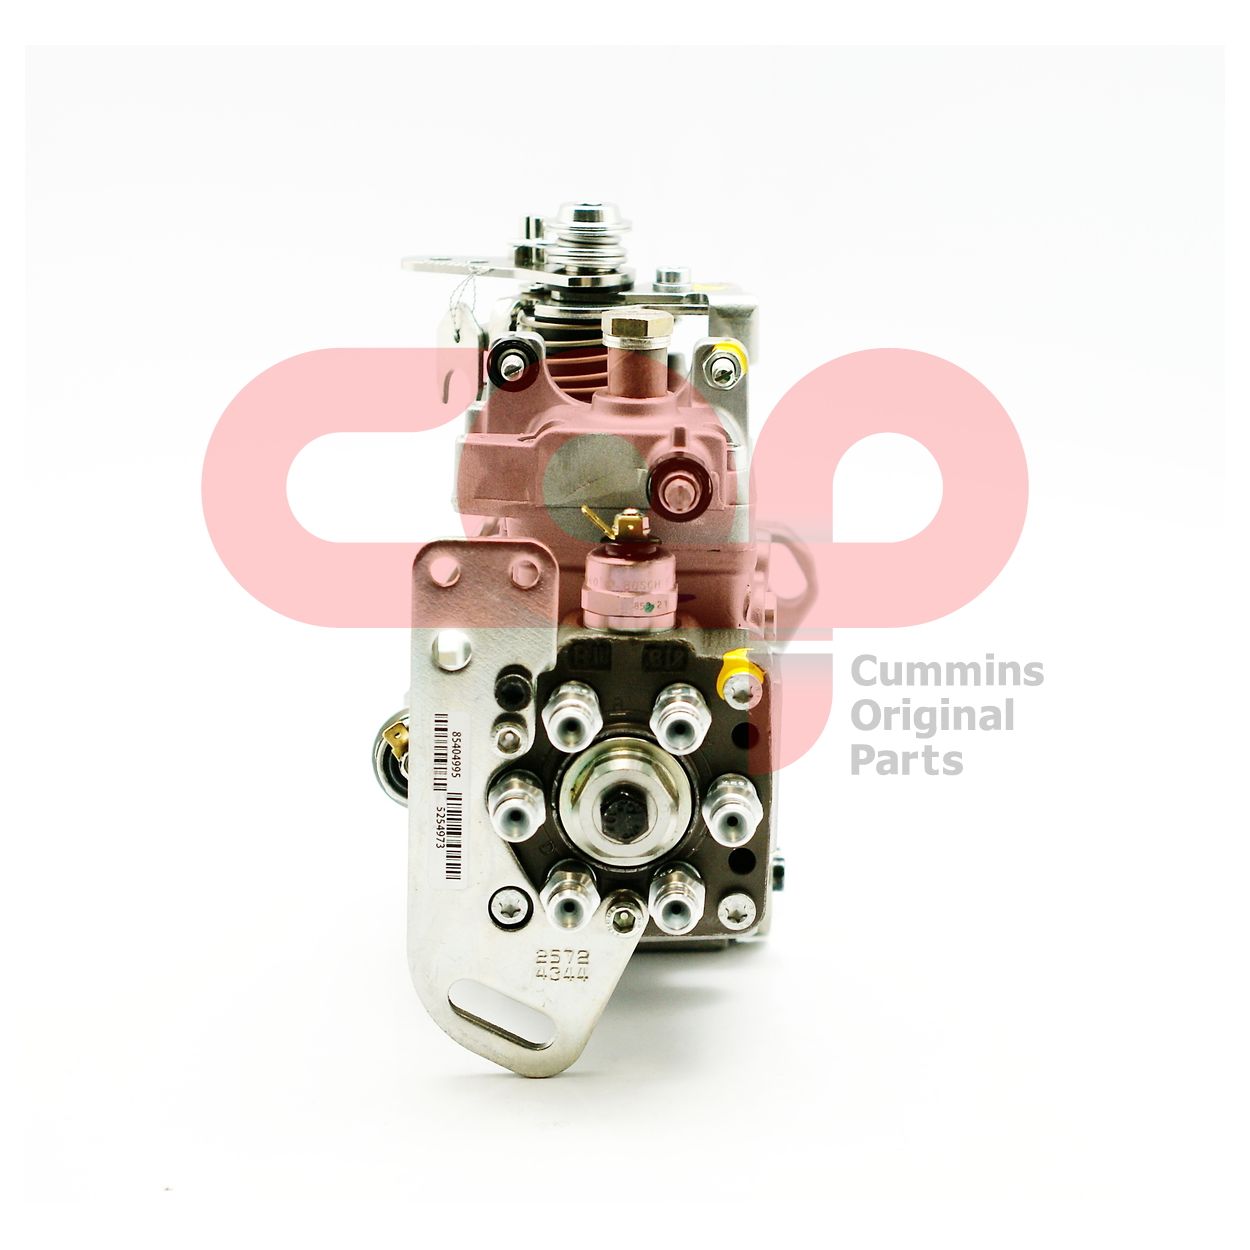 Топливный насос высокого давления (ТНВД) Bosch для газового двигателя Cummins B5.9 Series 5254973